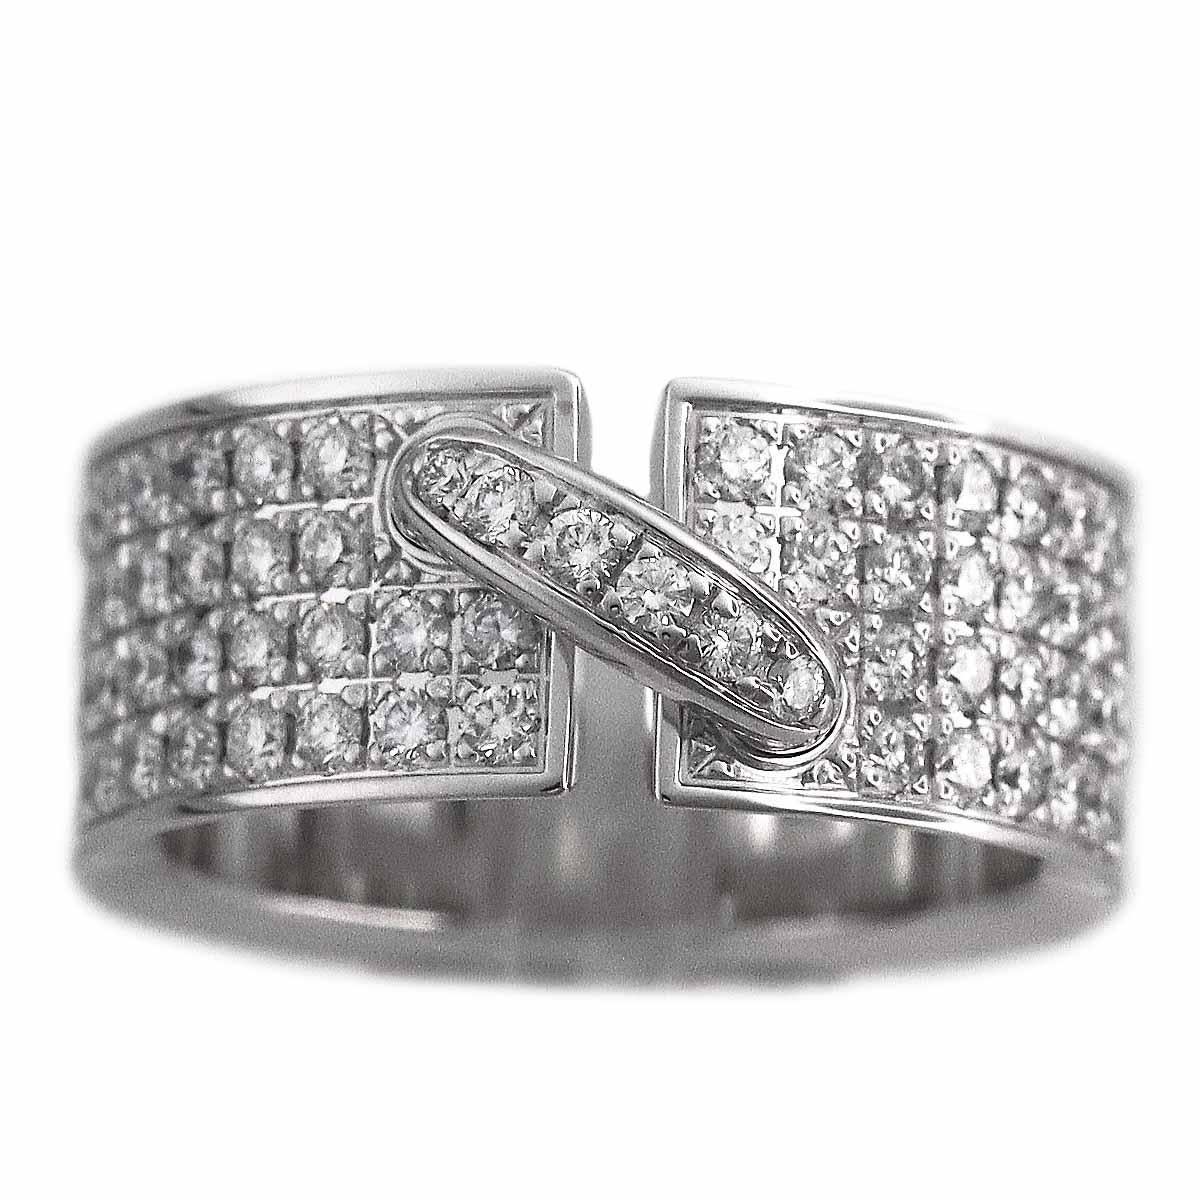 Marke:CHAUMET
Name:Liens Ring
MATERIAL:Diamant, 750 K18 WG Weißgold
Gewicht:9.8g（ungefähr)
Ringgröße(Zoll):Britisch & Australisch:K 1/2  /   US & Kanada:5 1/2 /  Französisch & Russisch:50 /  Deutsch:15.9 /  Japanisch:  10 /Schweiz: